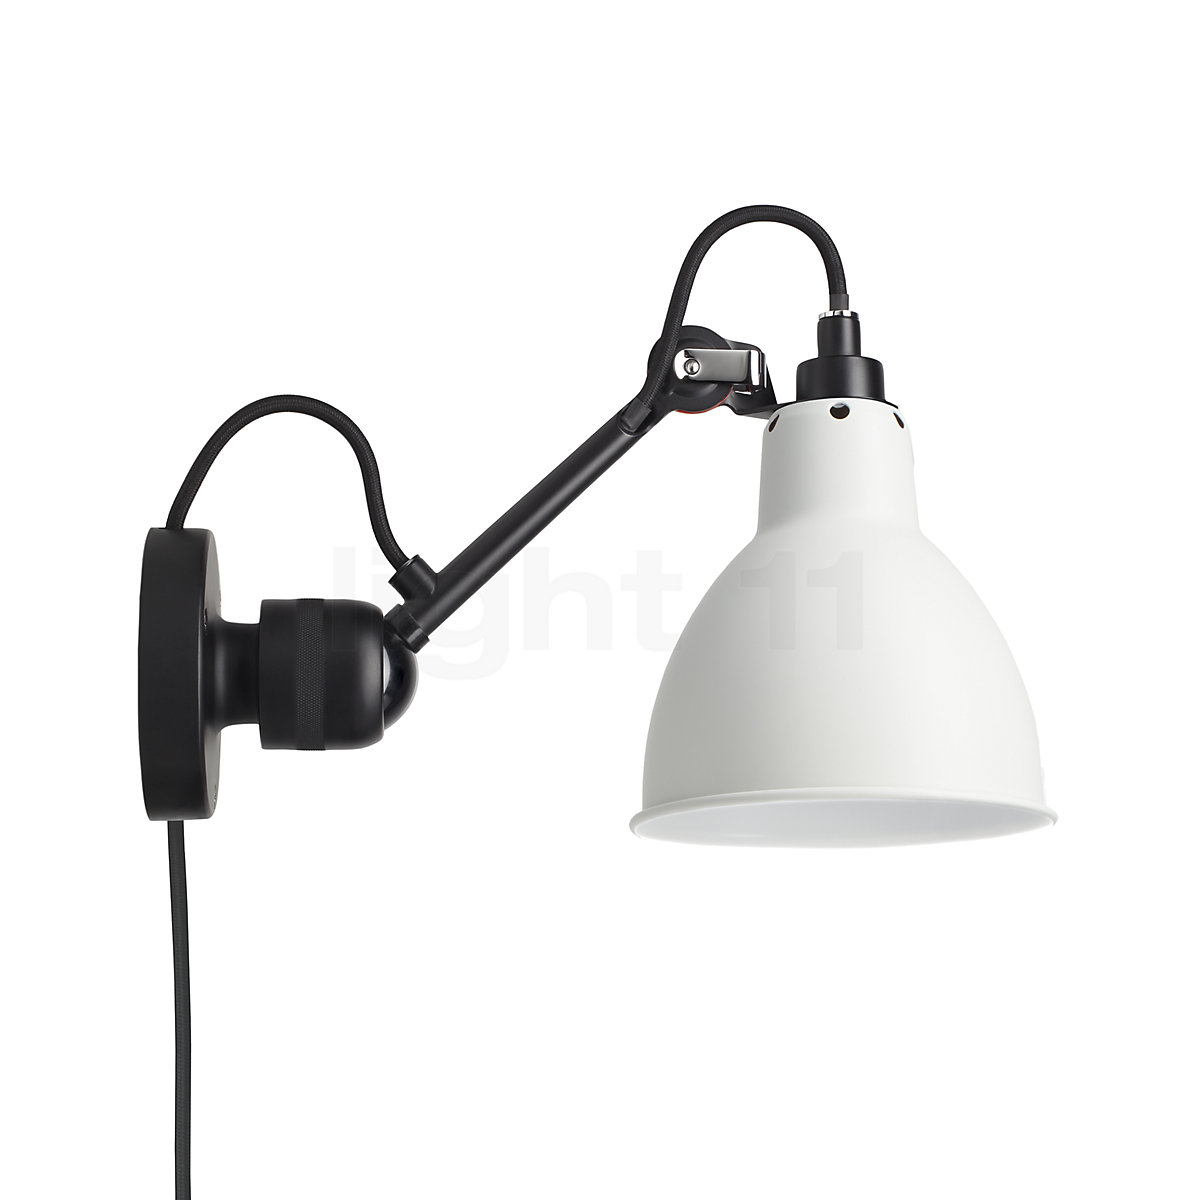 Lampadina a Led per lampade applique lampadari plafoniere con attacco G9  luce ca - - LAMPADE LED LAMPADINE E FARETTI SPOT